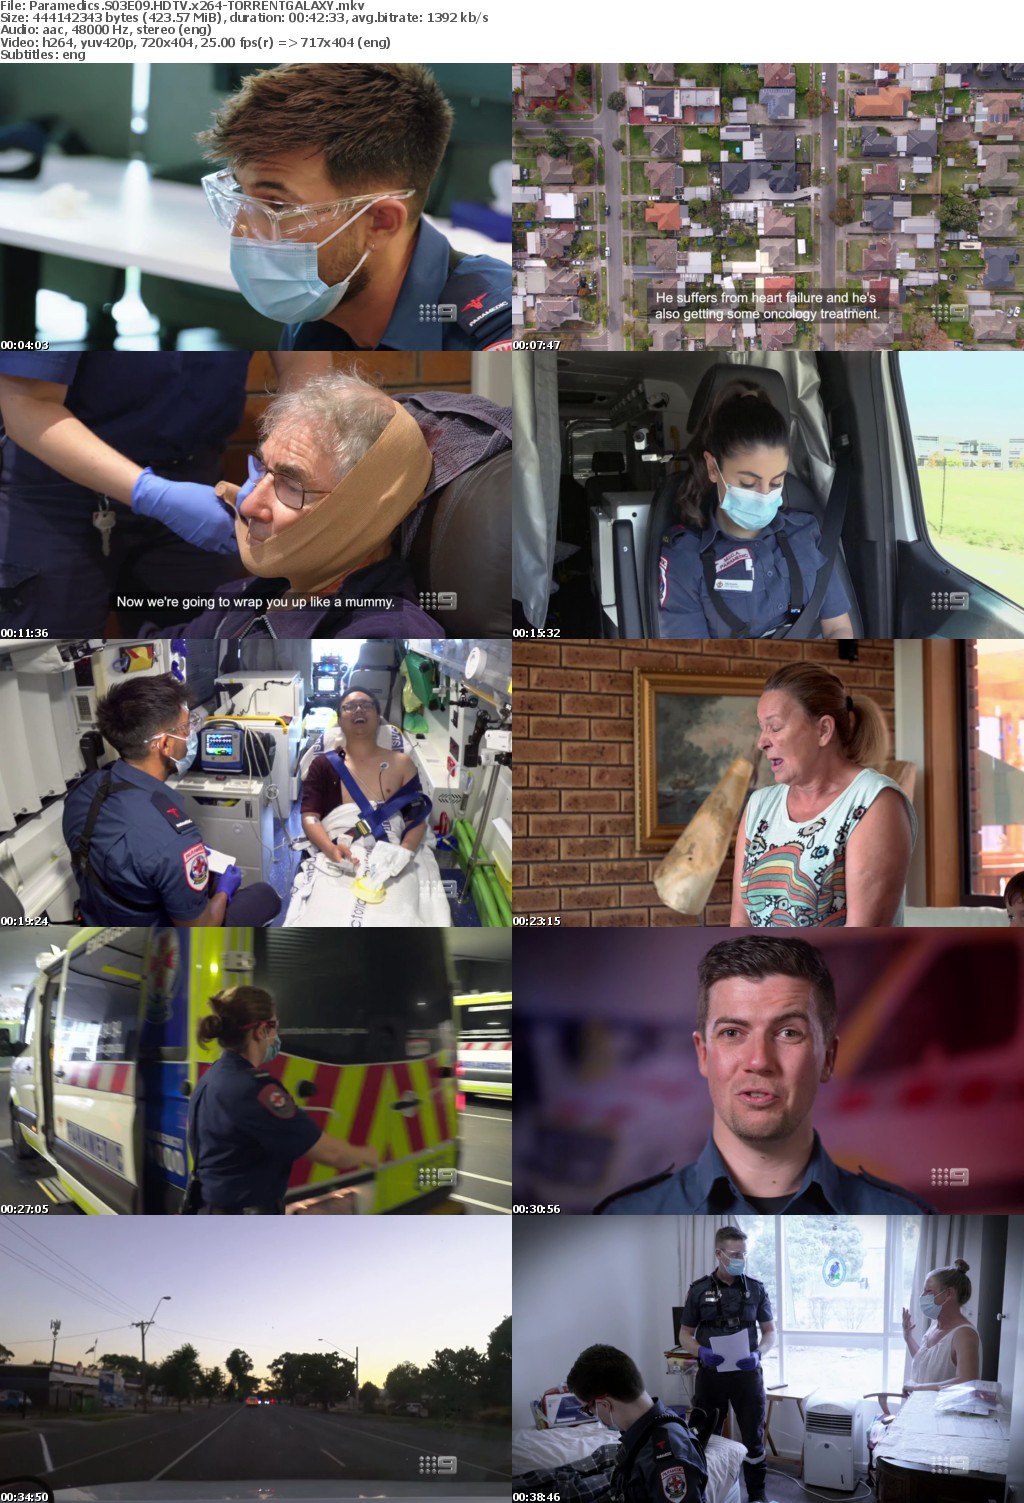 Paramedics S03E09 HDTV x264-GALAXY